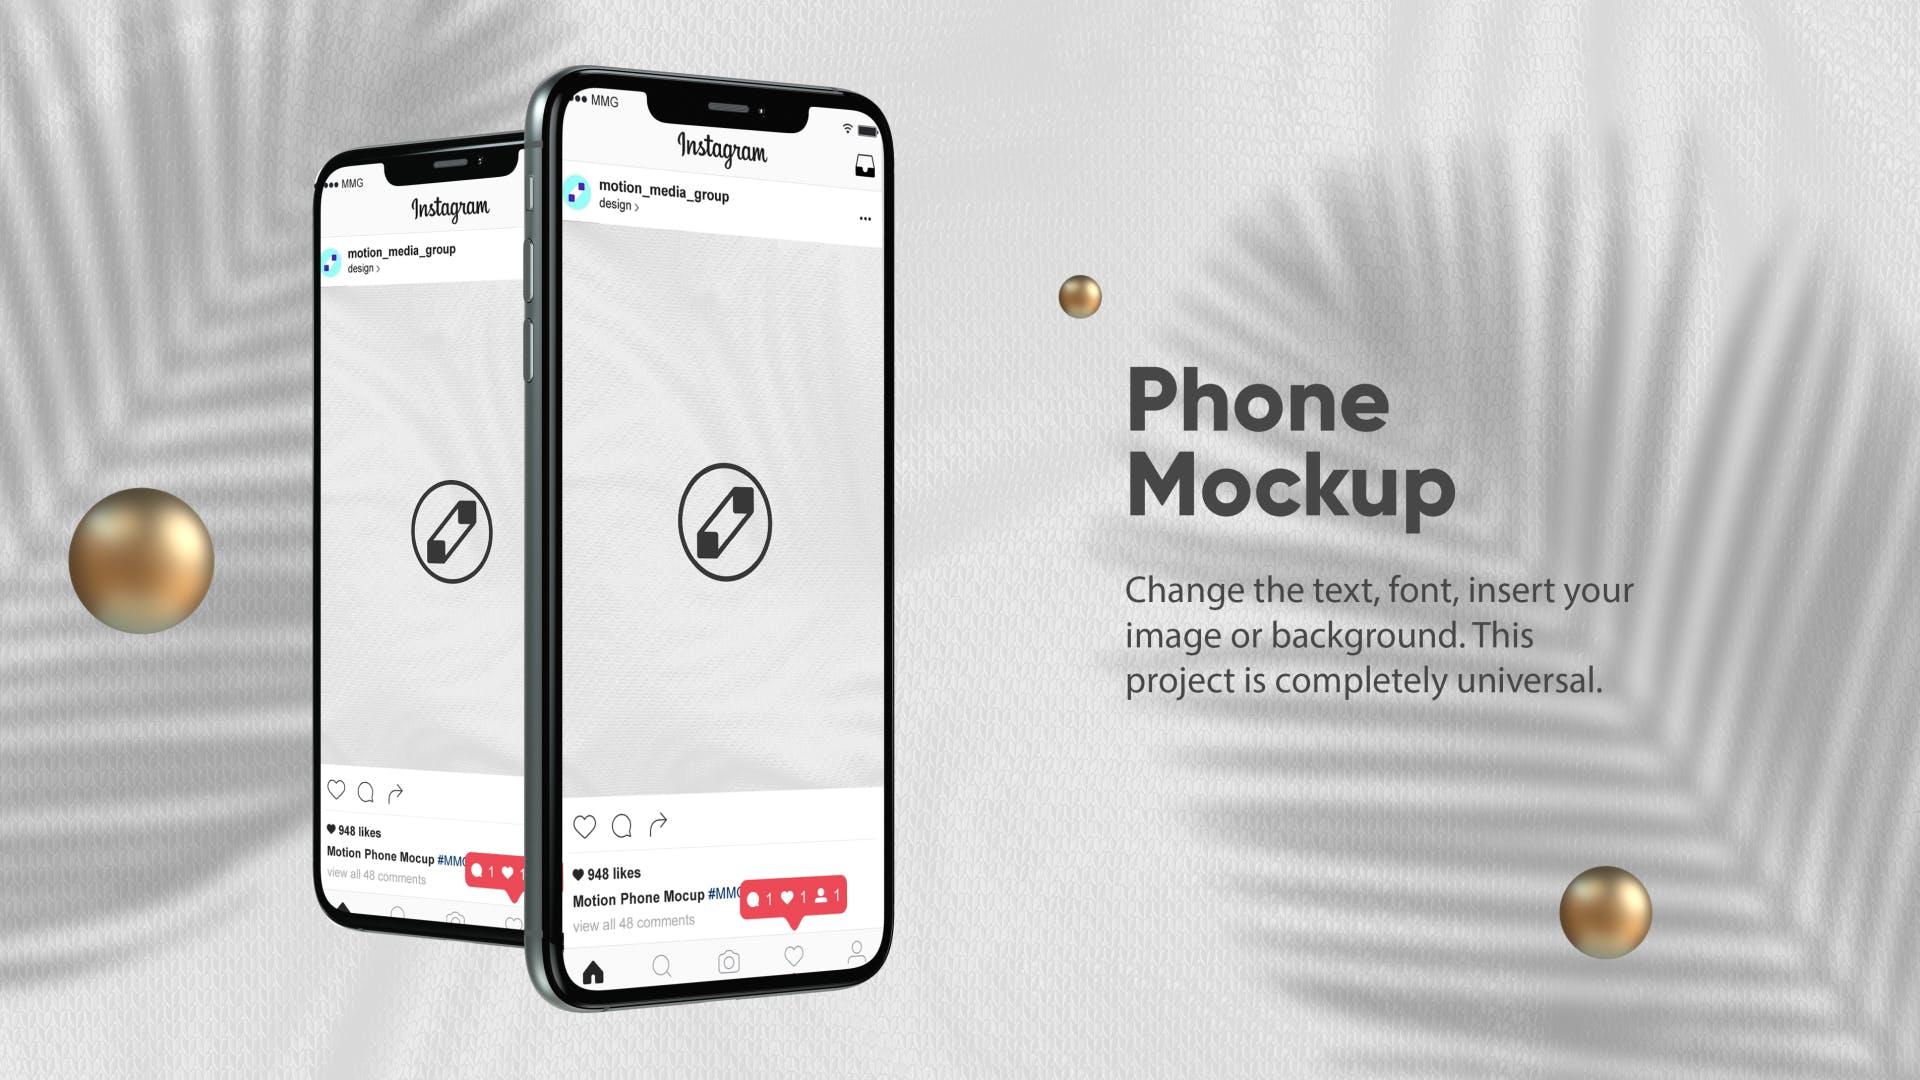 优雅时尚风格3D立体风格iPhone手机屏幕预览大洋岛精选样机 10 Light Phone Mockups插图2